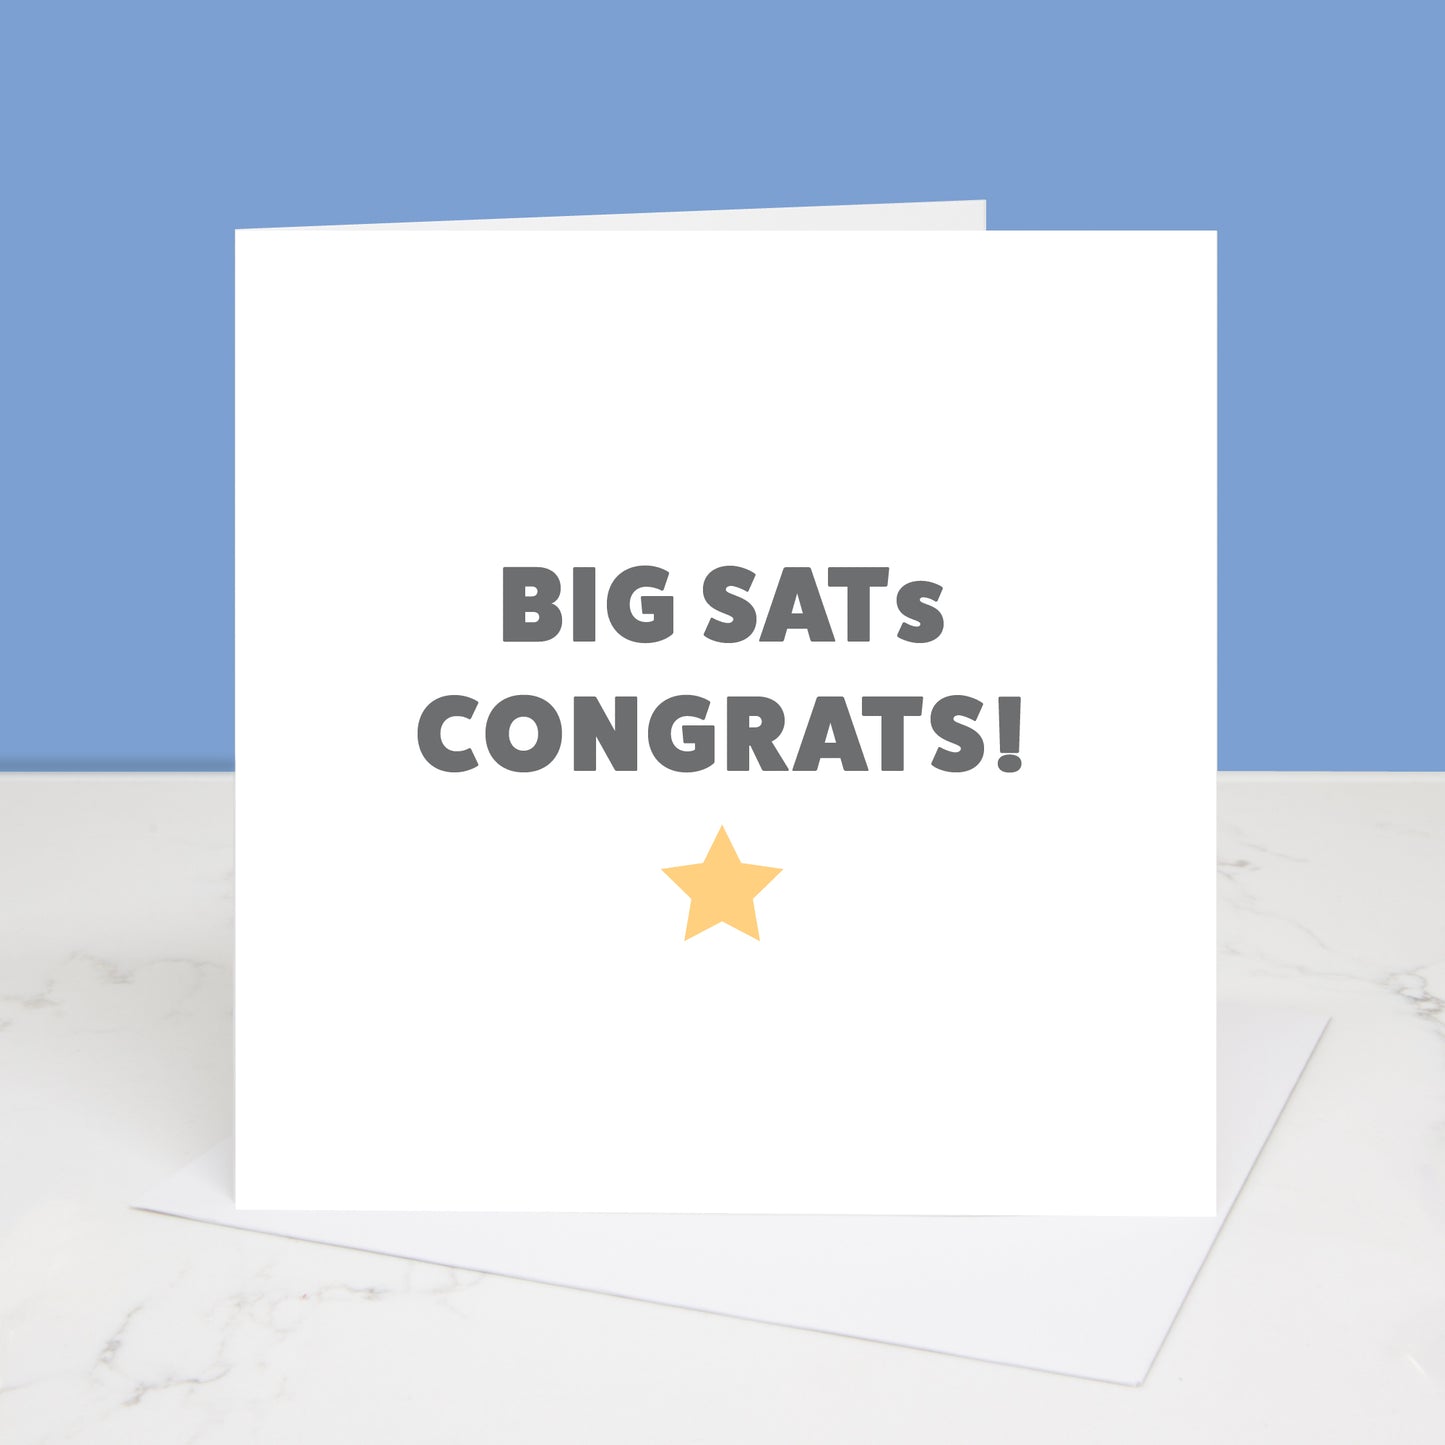 Big SATs Congrats card